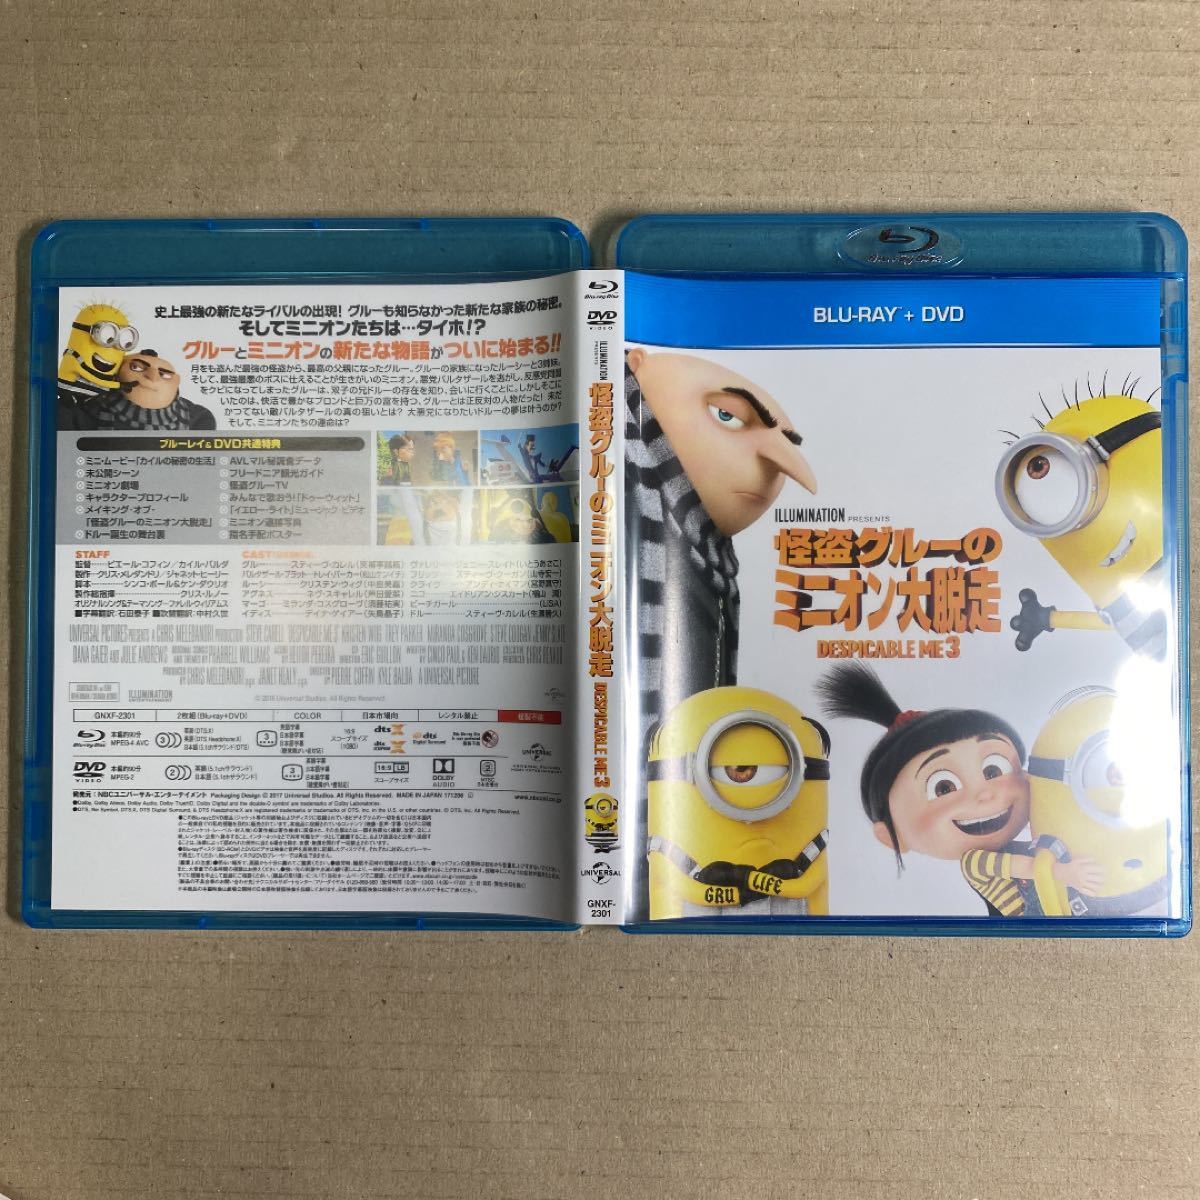 【Blu-ray+DVD】怪盗グルーのミニオン大脱走 ('17米)〈2枚組〉